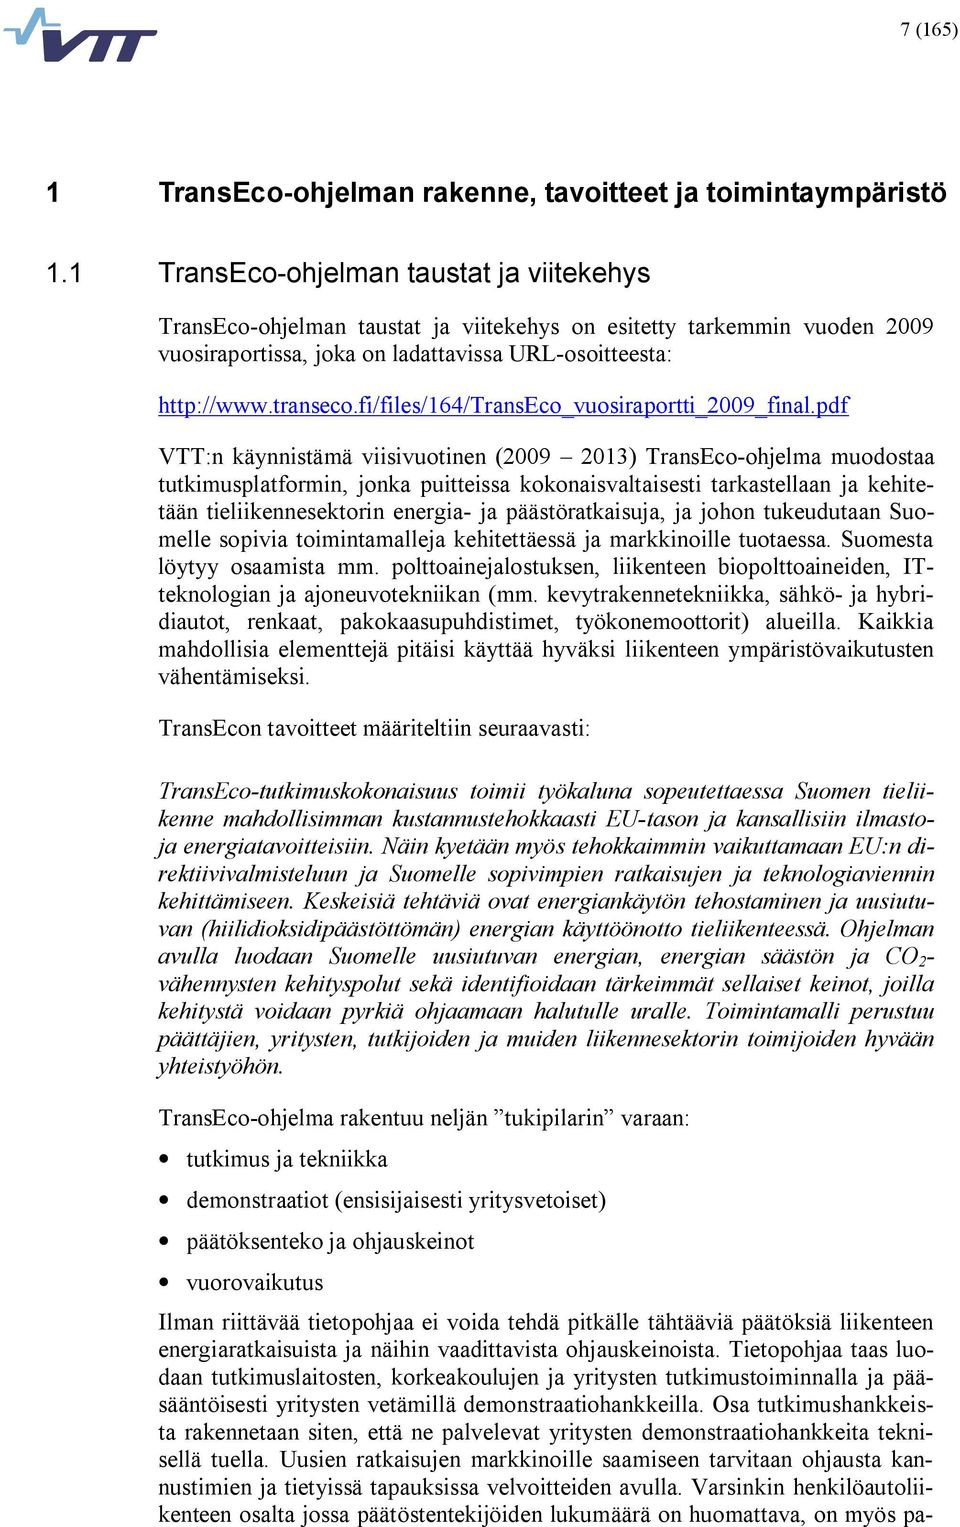 fi/files/164/transeco_vuosiraportti_2009_final.